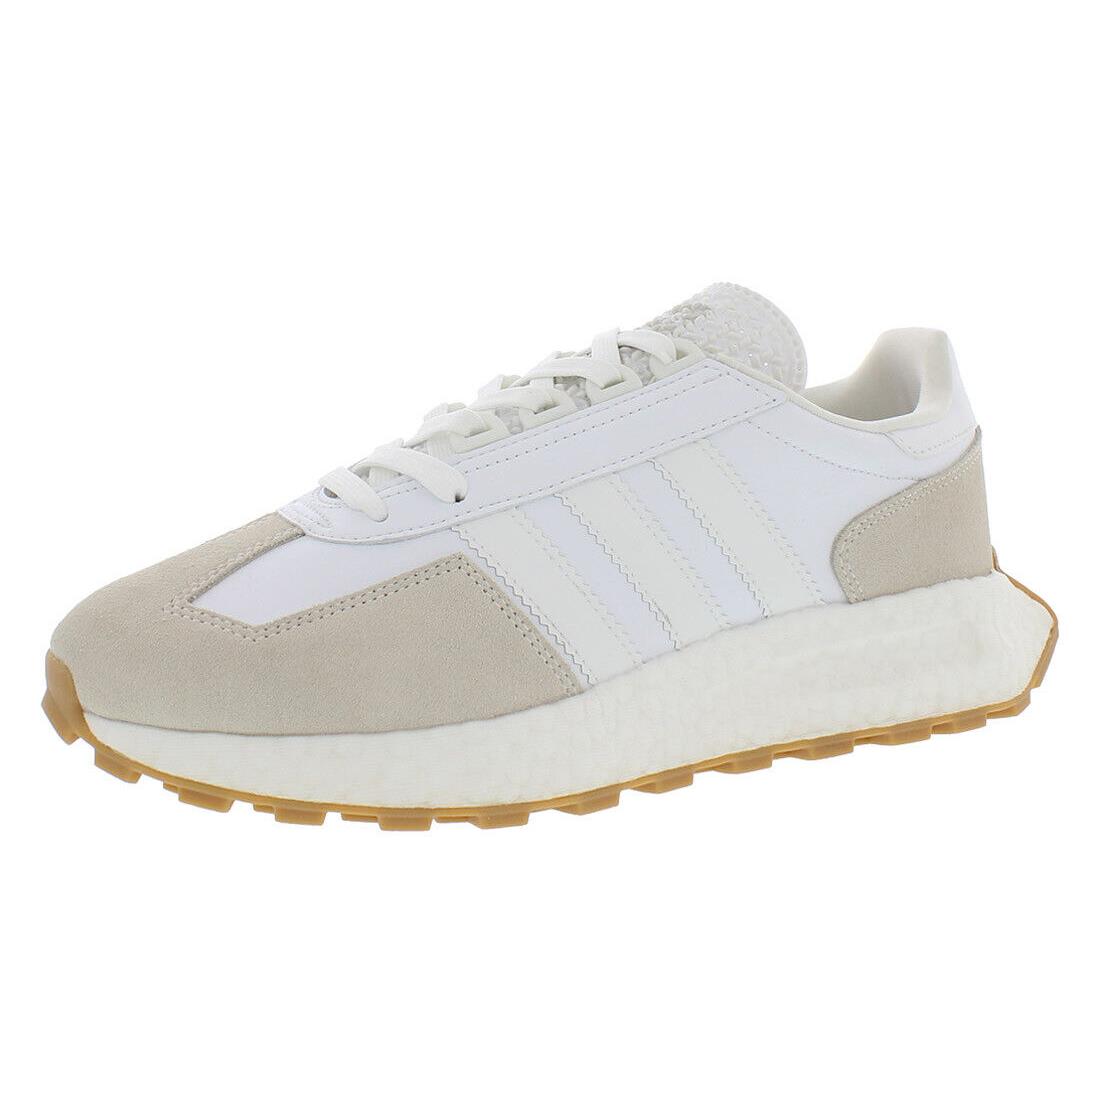 Adidas Retropy E5 Mens Shoes - White/Taupe, Main: White